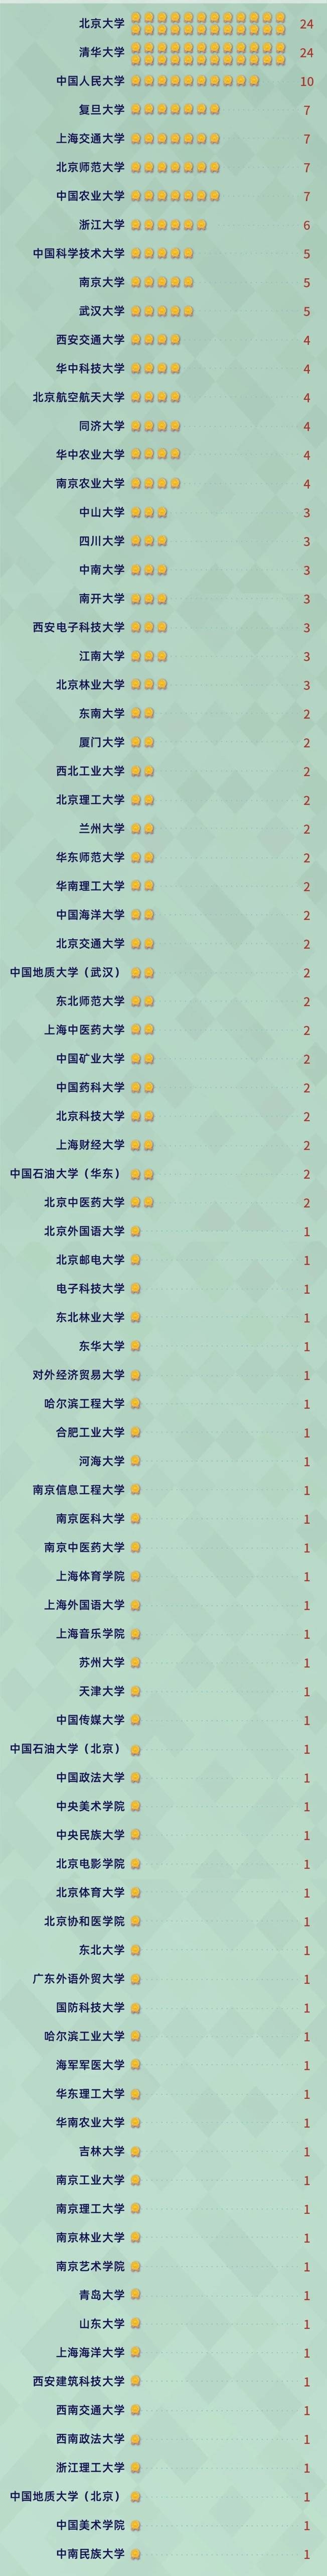 软科中国2020排名_中国软科“文科”大学排名出炉:清华大学排